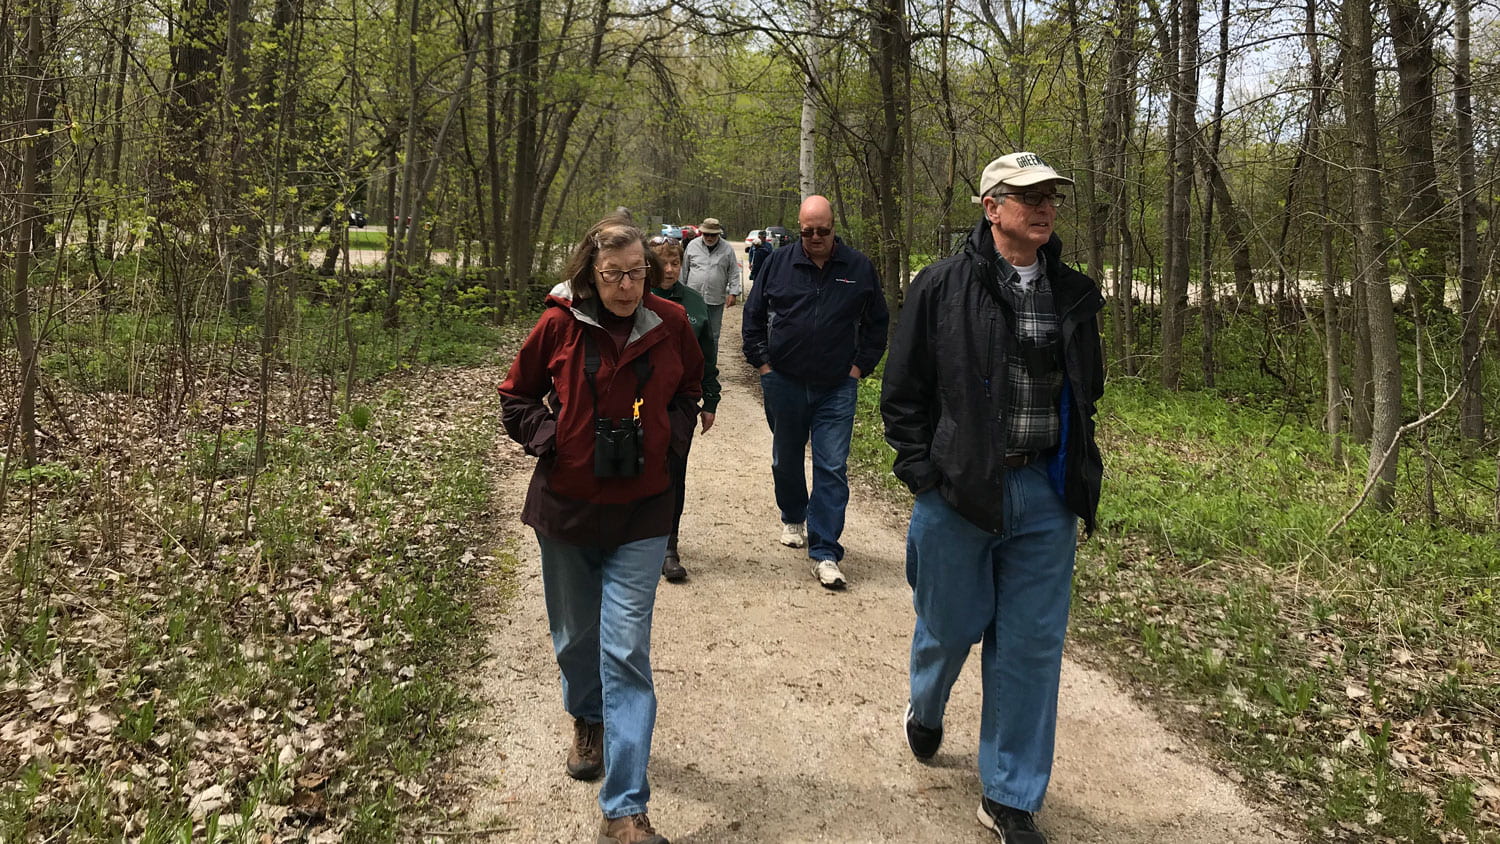 2019 Retirees Spring Arboretum Walk